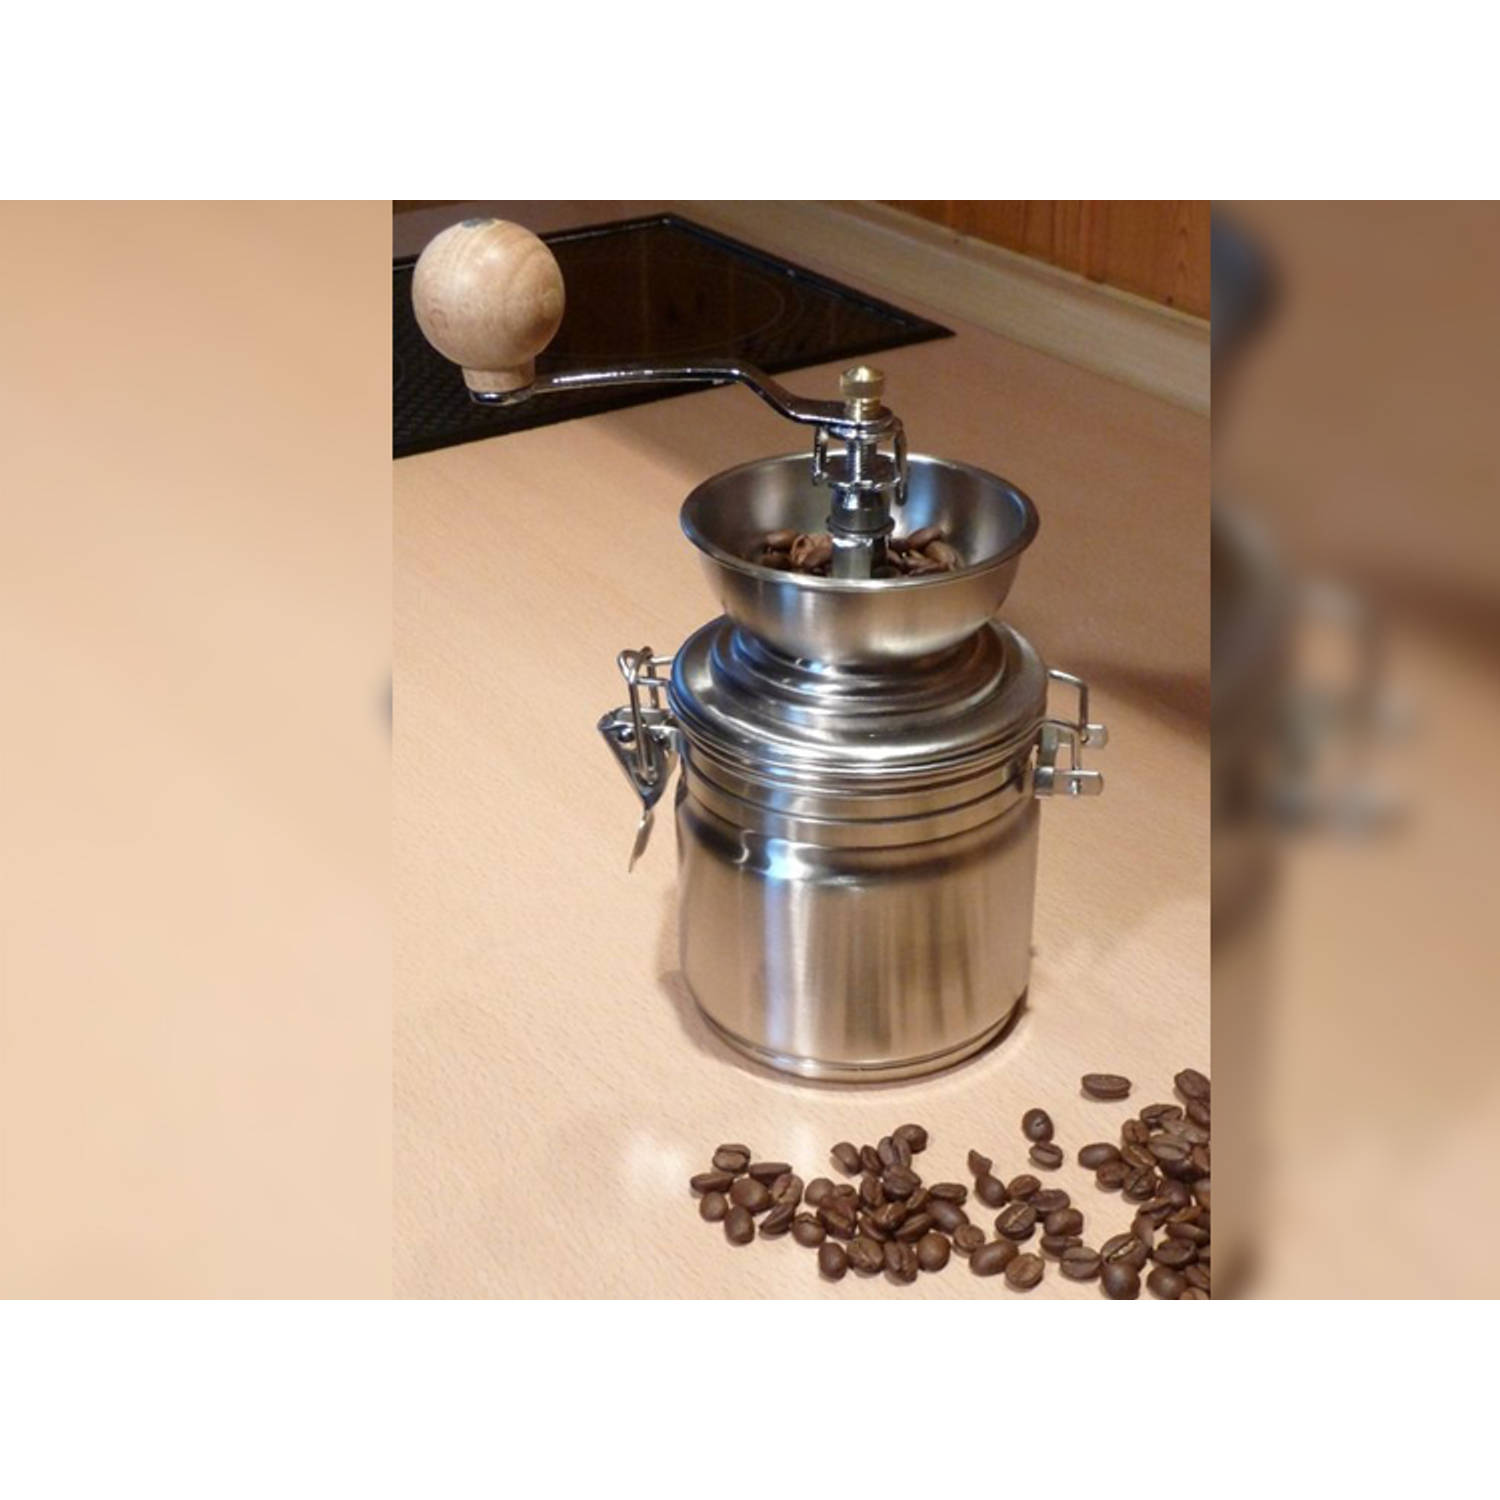 HI Handmatige Koffiemolen RVS - Groot - Handgemalen Koffie |